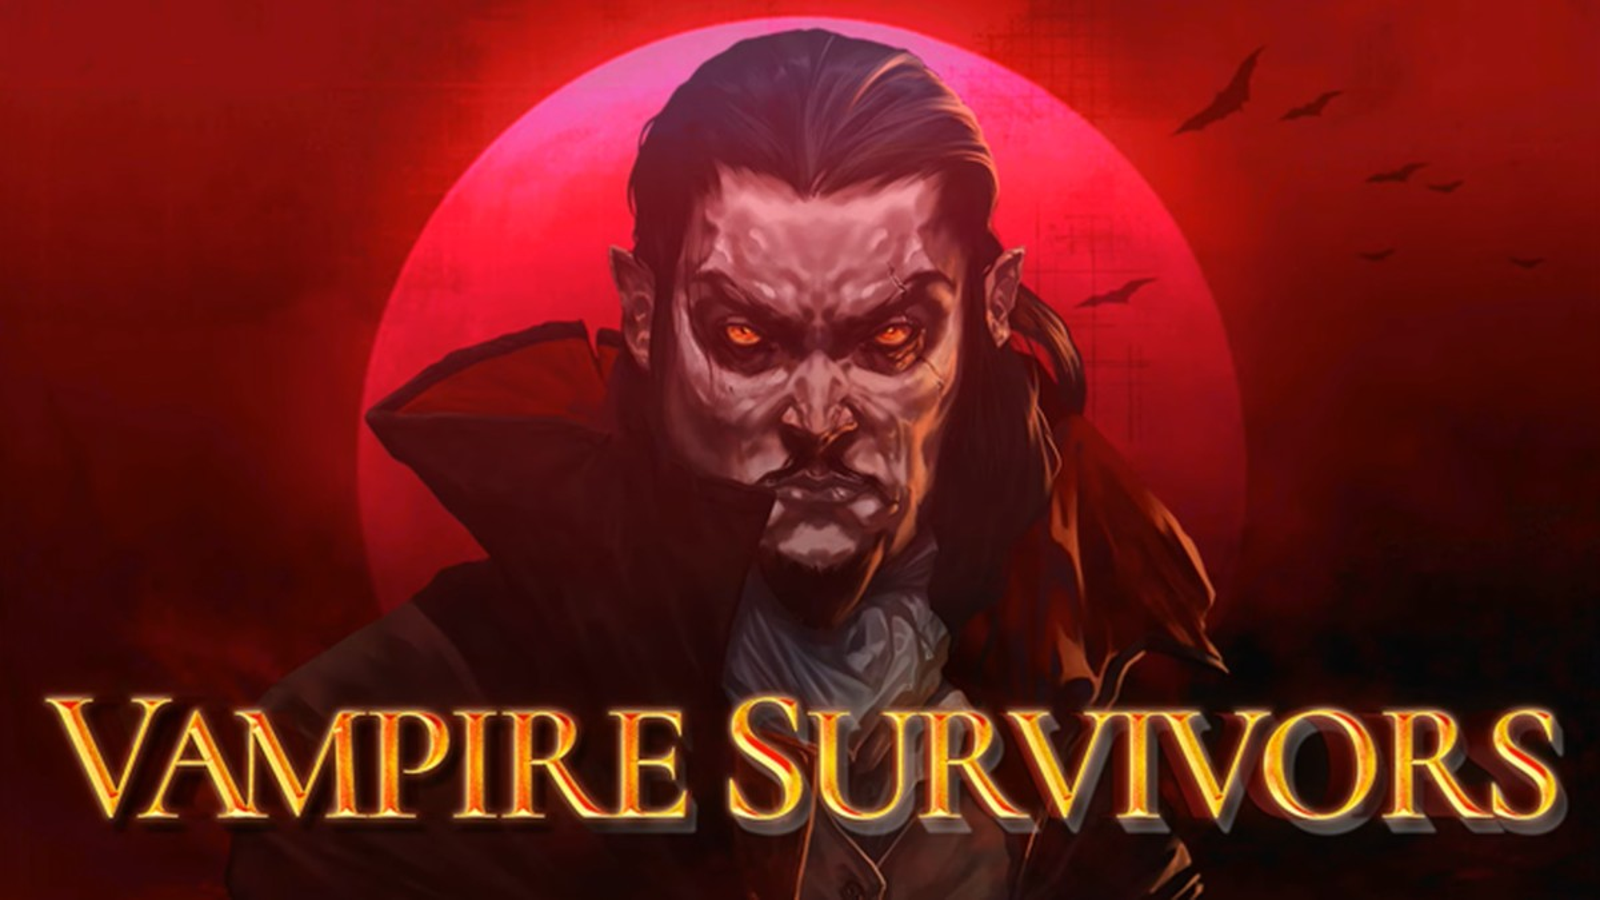 Xbox - Vampire Survivors, Página 4